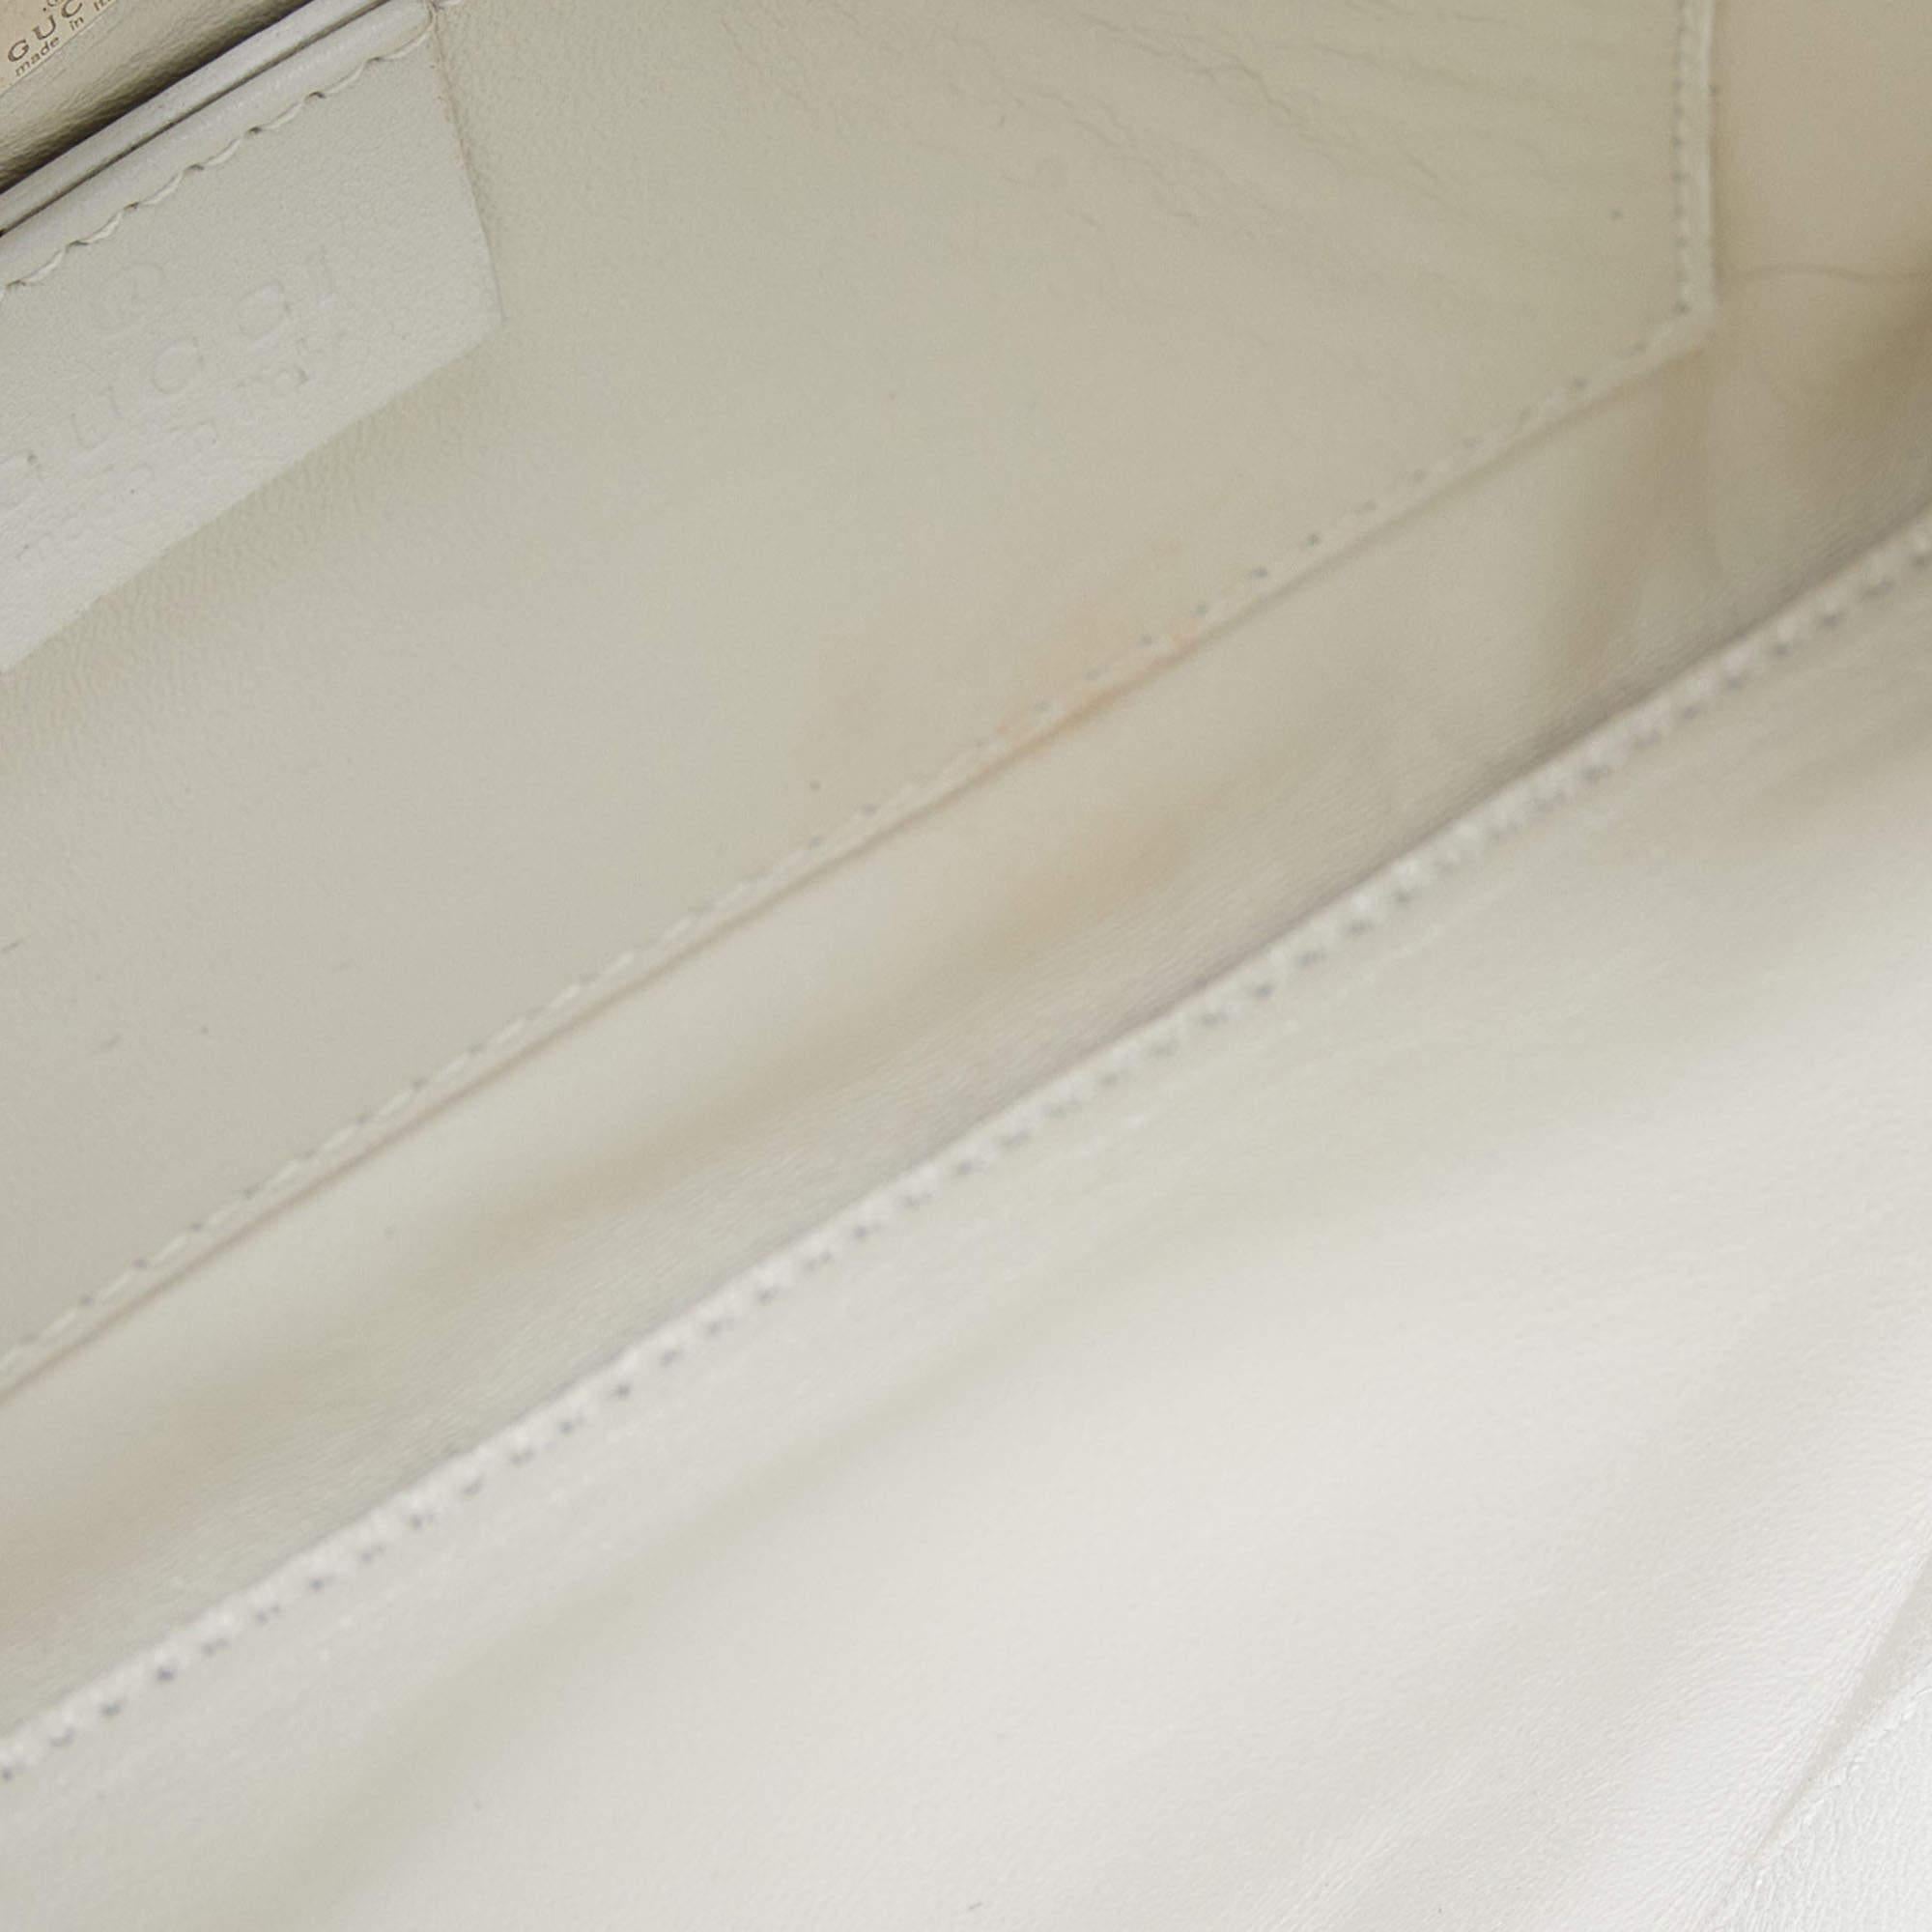 Gucci Off White Leather Hobo In Fair Condition For Sale In Dubai, Al Qouz 2